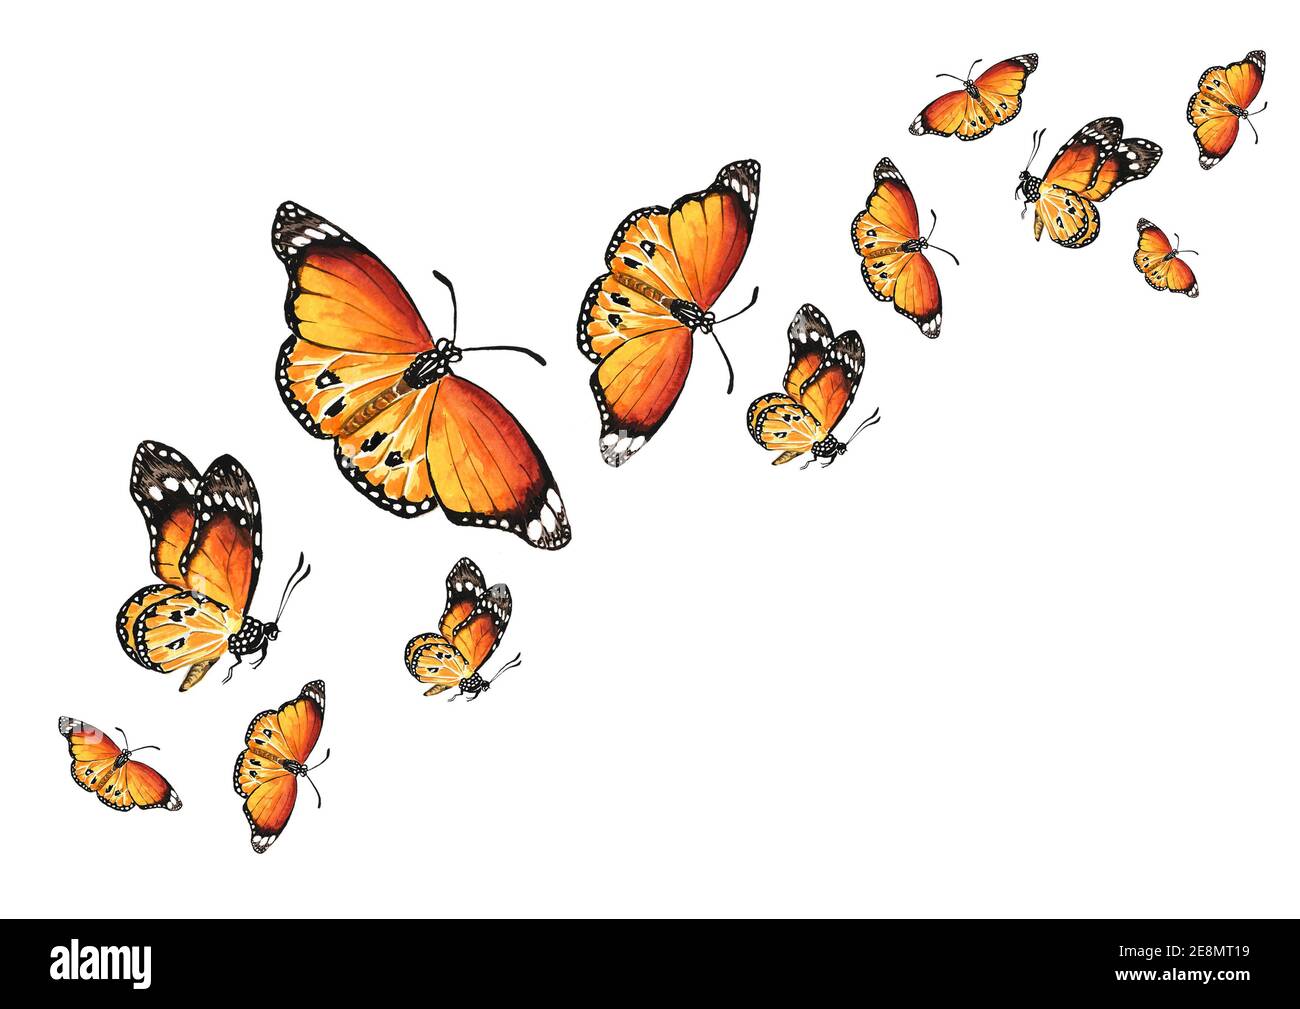 Mariposas voladoras. El concepto de liberación, libertad, avance, cambio.  Ilustración de acuarela dibujada a mano, aislada sobre fondo blanco  Fotografía de stock - Alamy